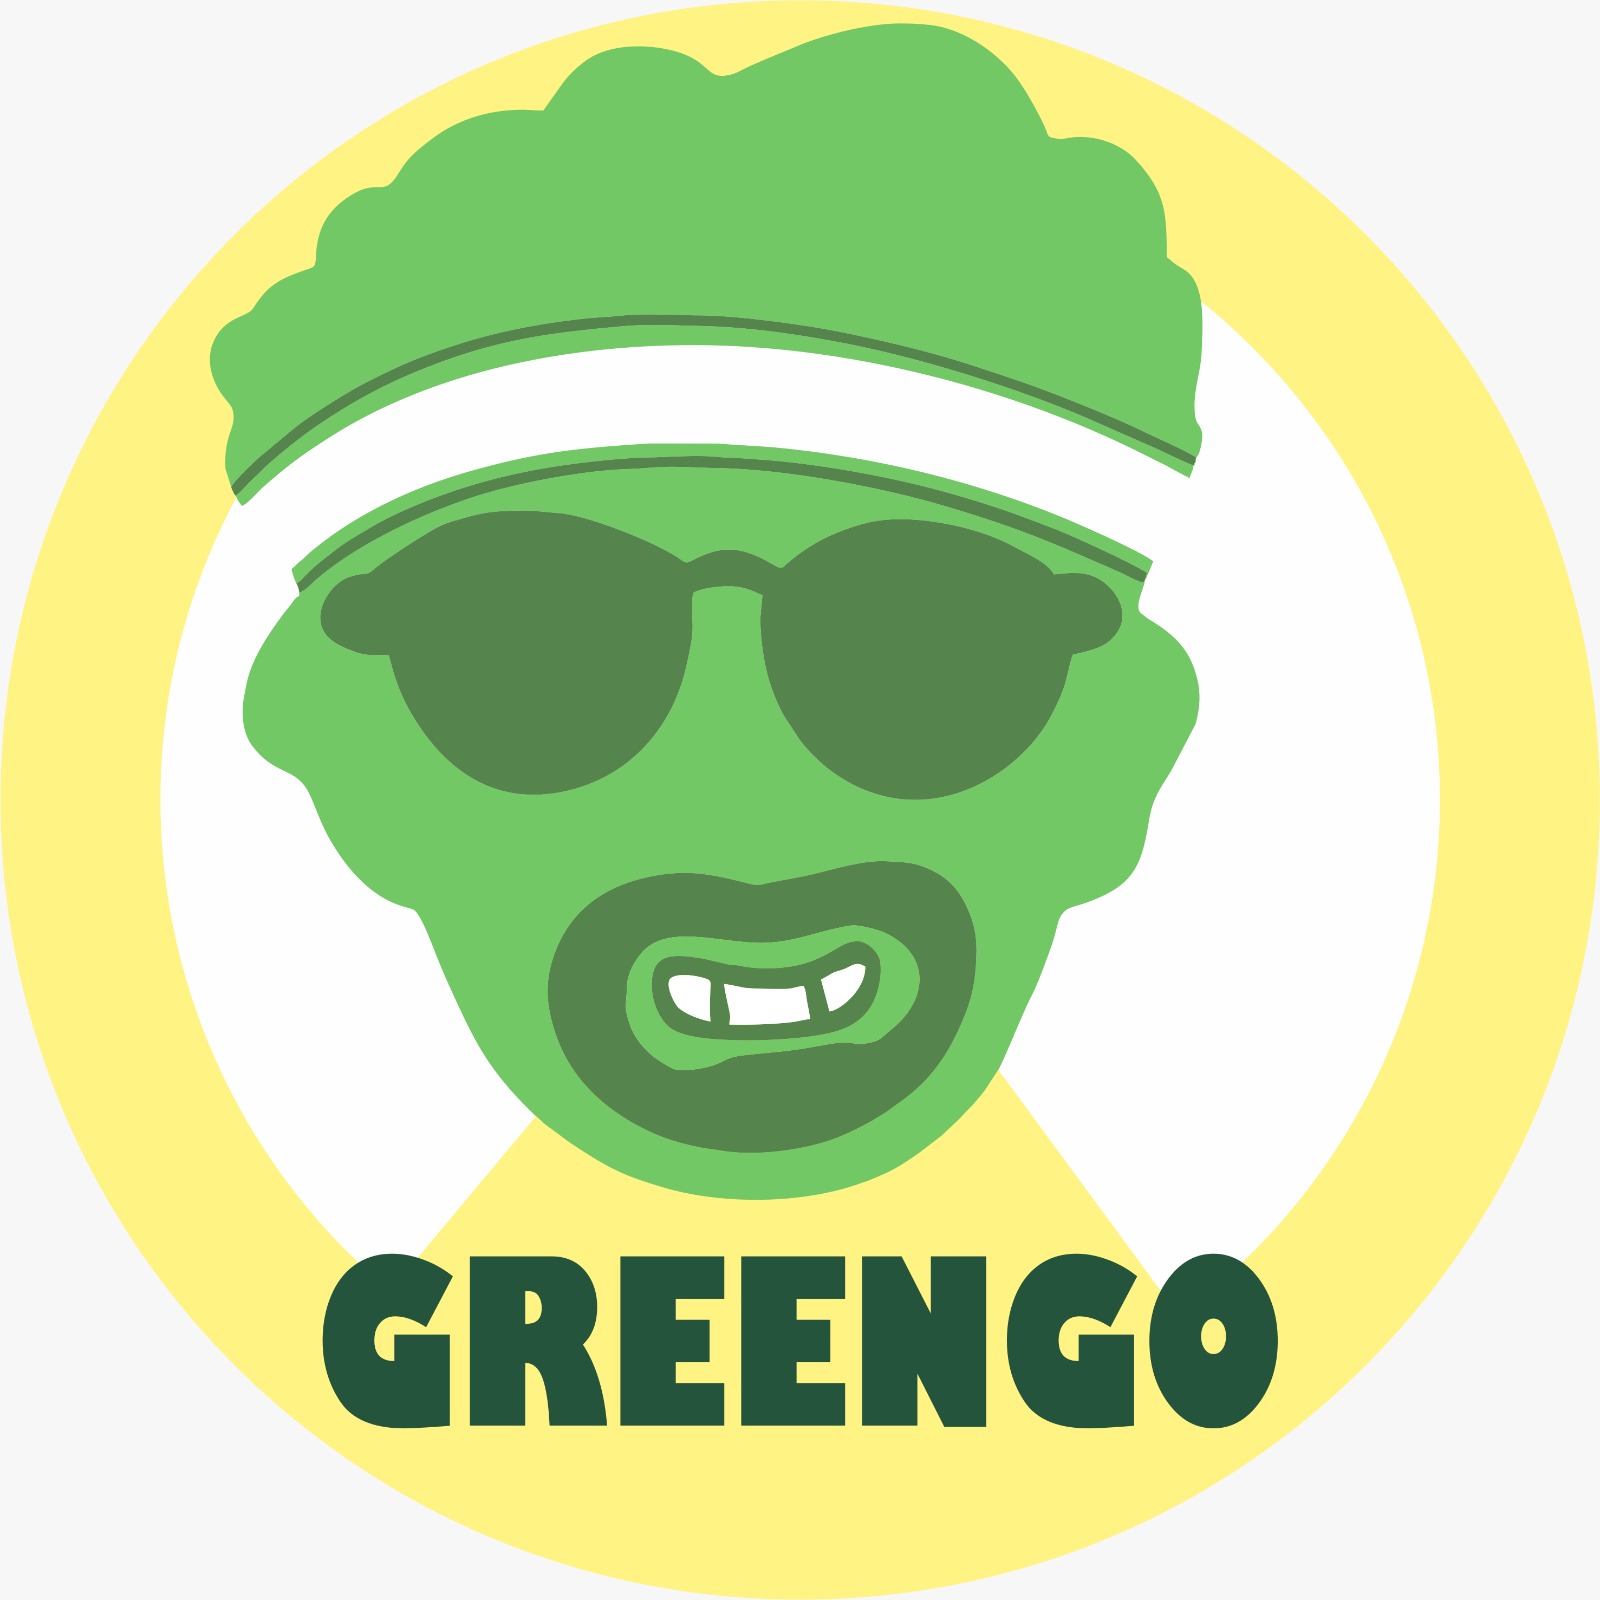 GreenGo are un logo pe masura afacerii